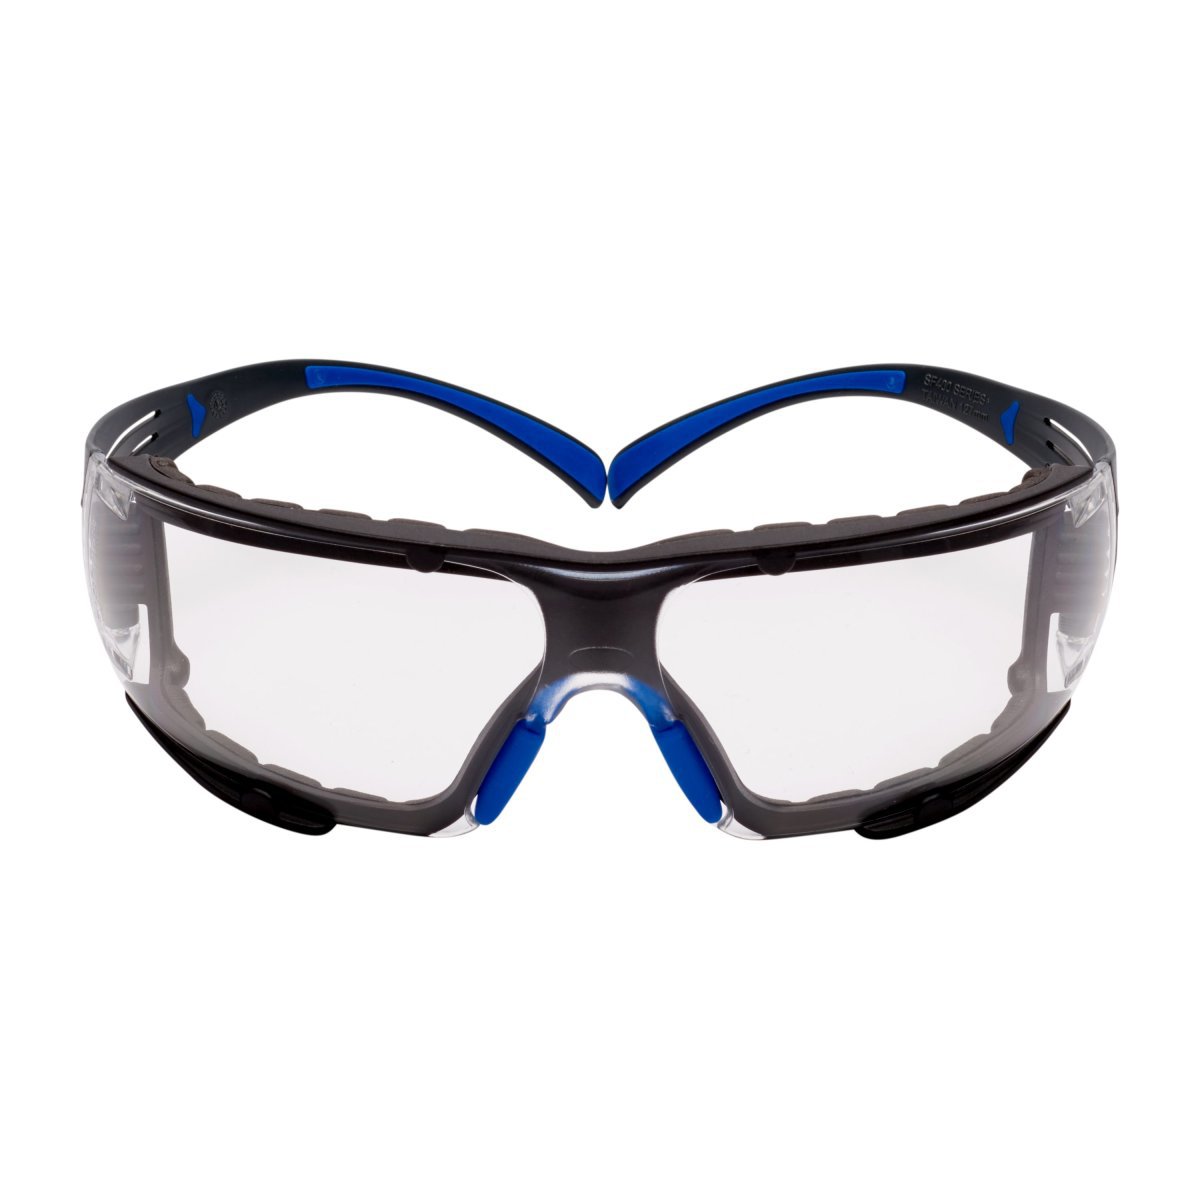 3M™ SecureFit™ Safety Glasses SF401SGAF-BLU-F, Blue/Gray, Clear Scotchgard™ Anti-Fog Lens, Foam Gasket (Availability restriction